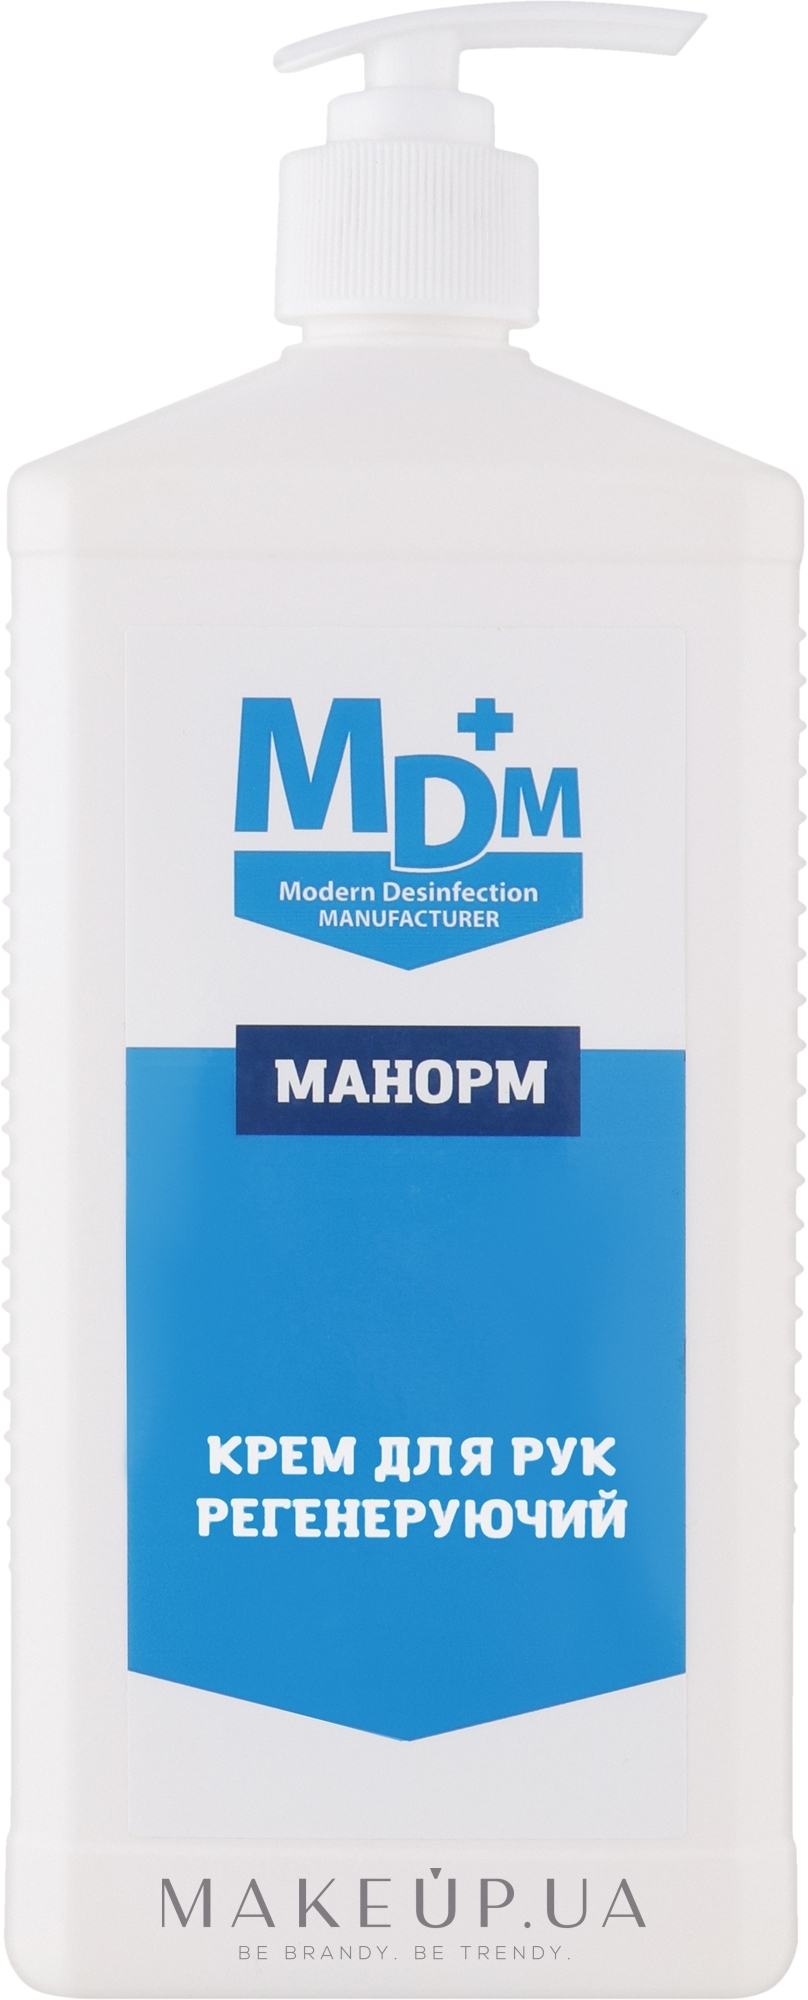 Регенерувальний крем для рук "Манорм" - MDM — фото 1000ml